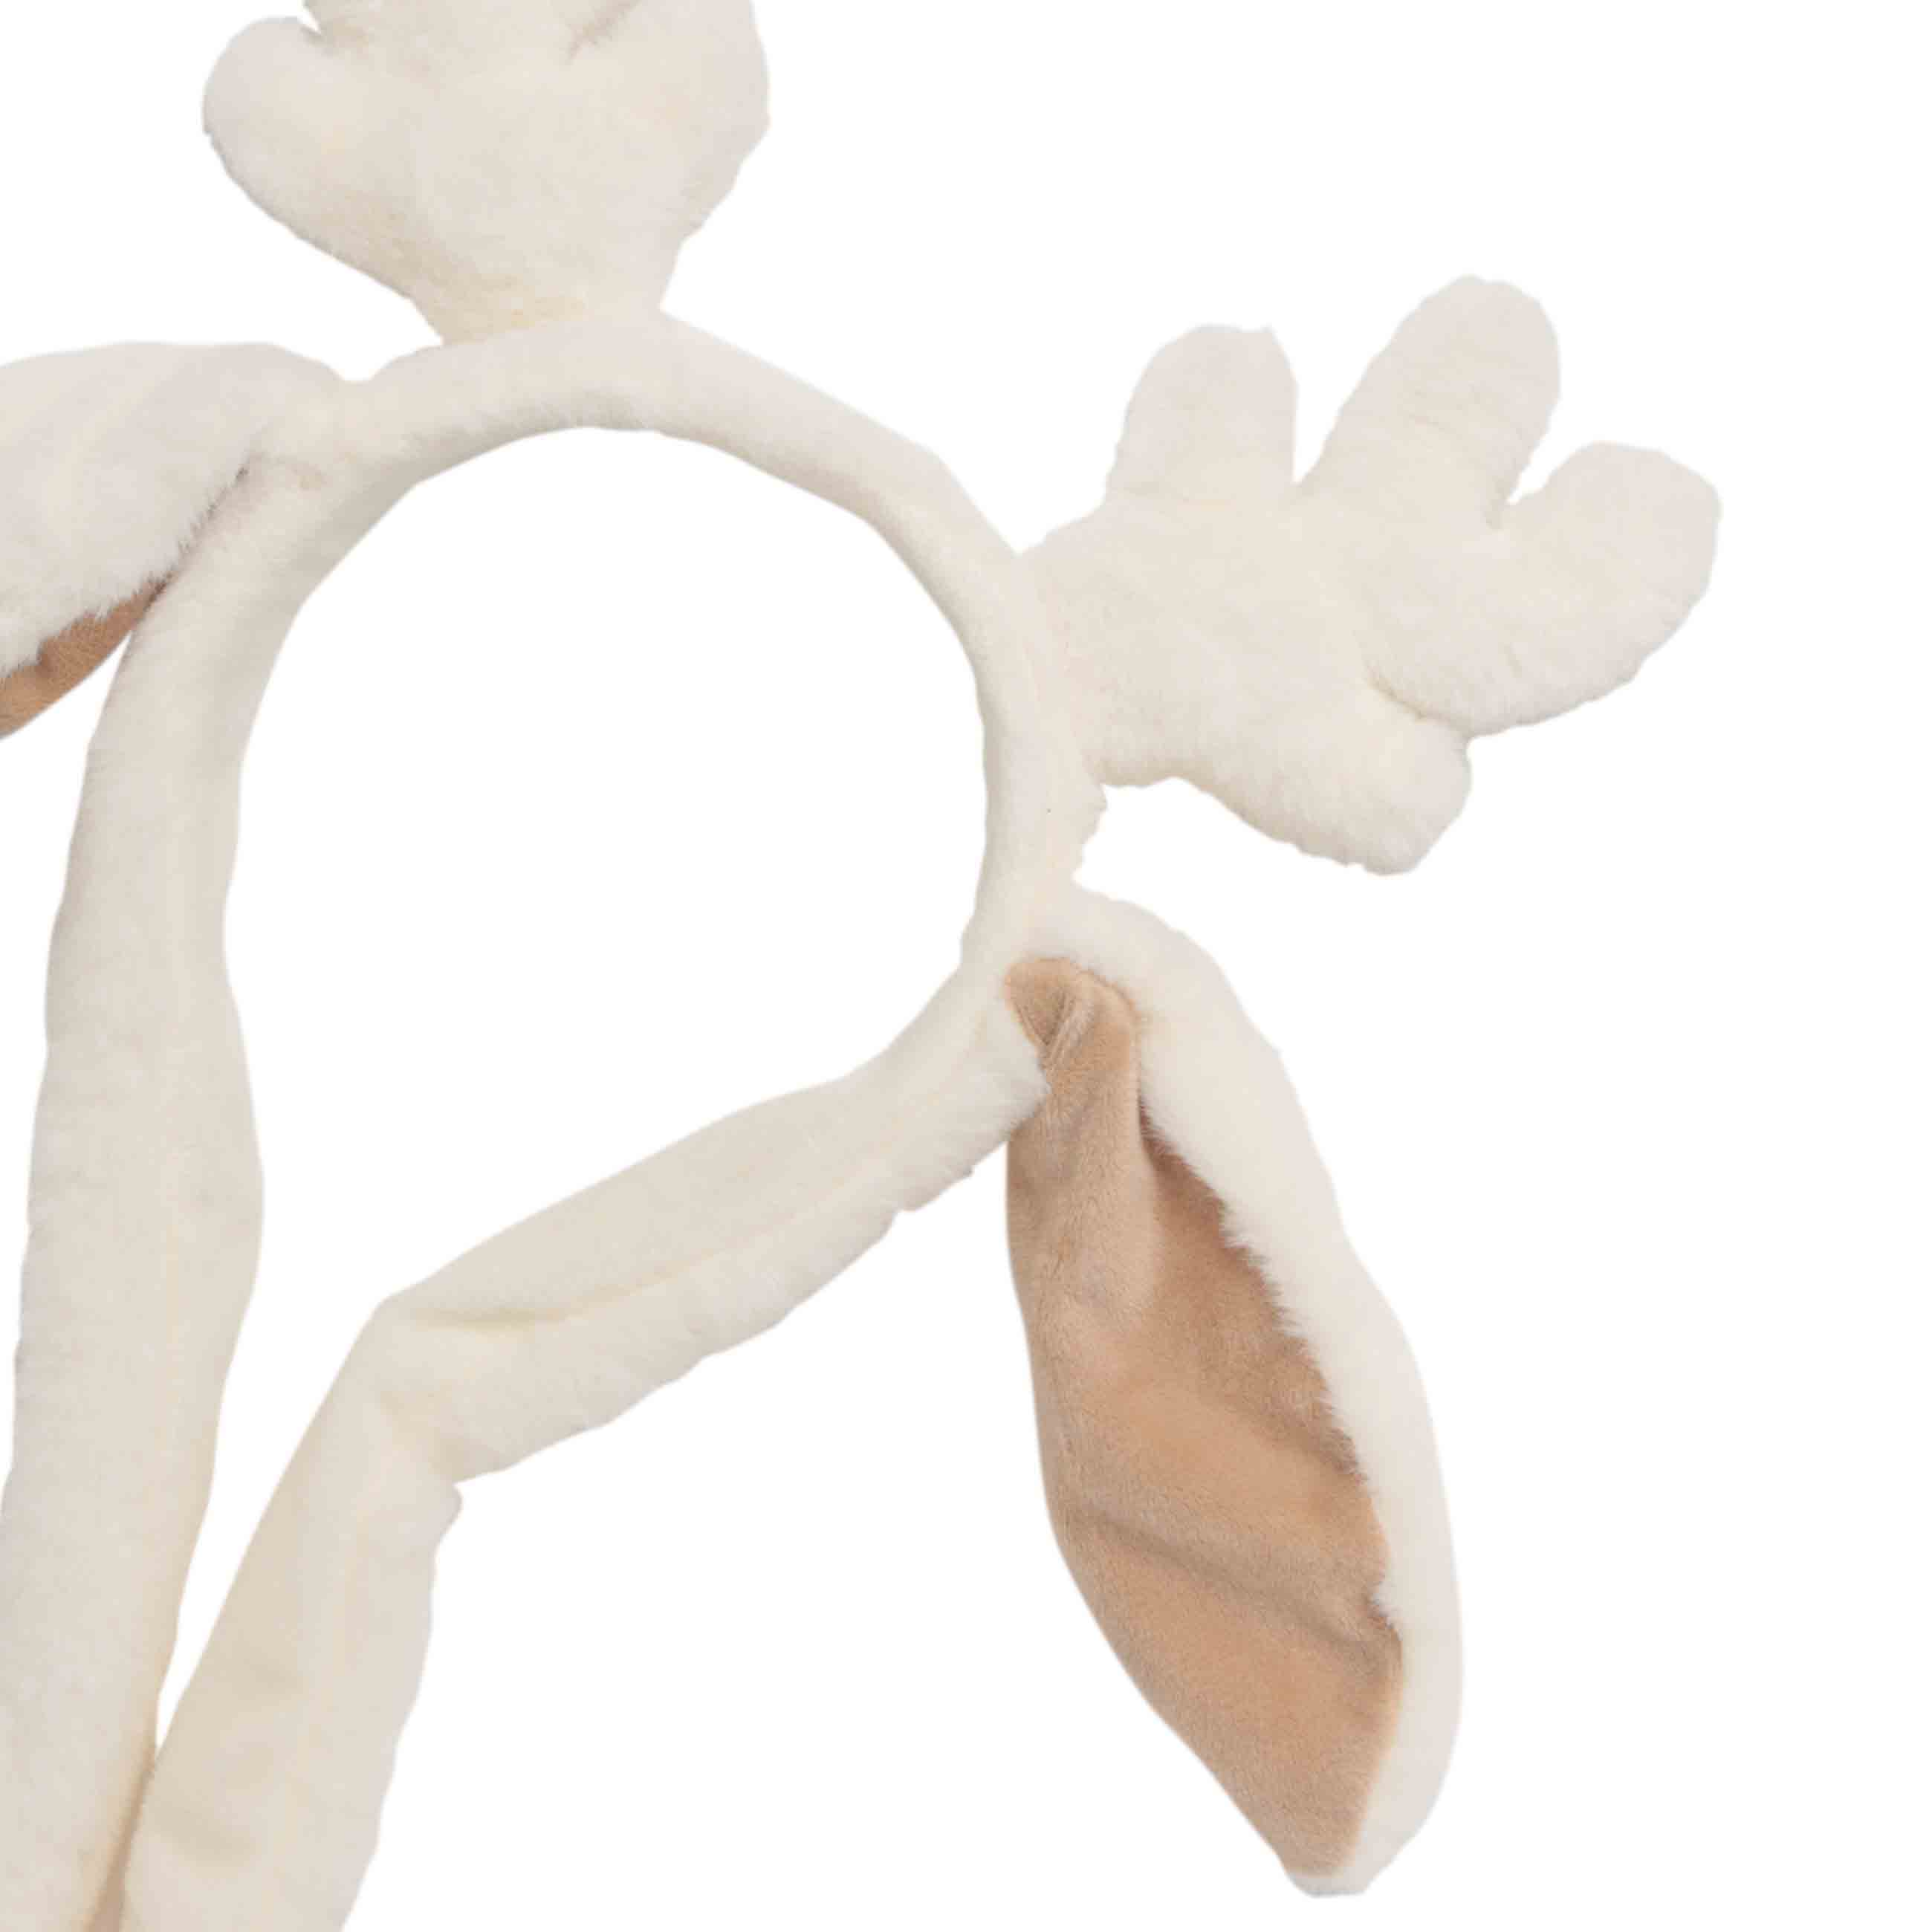 Сәндік жиек, 13х20 см, құлақтары көтерілген, полиэстер, экру, Deer toy изображение № 2